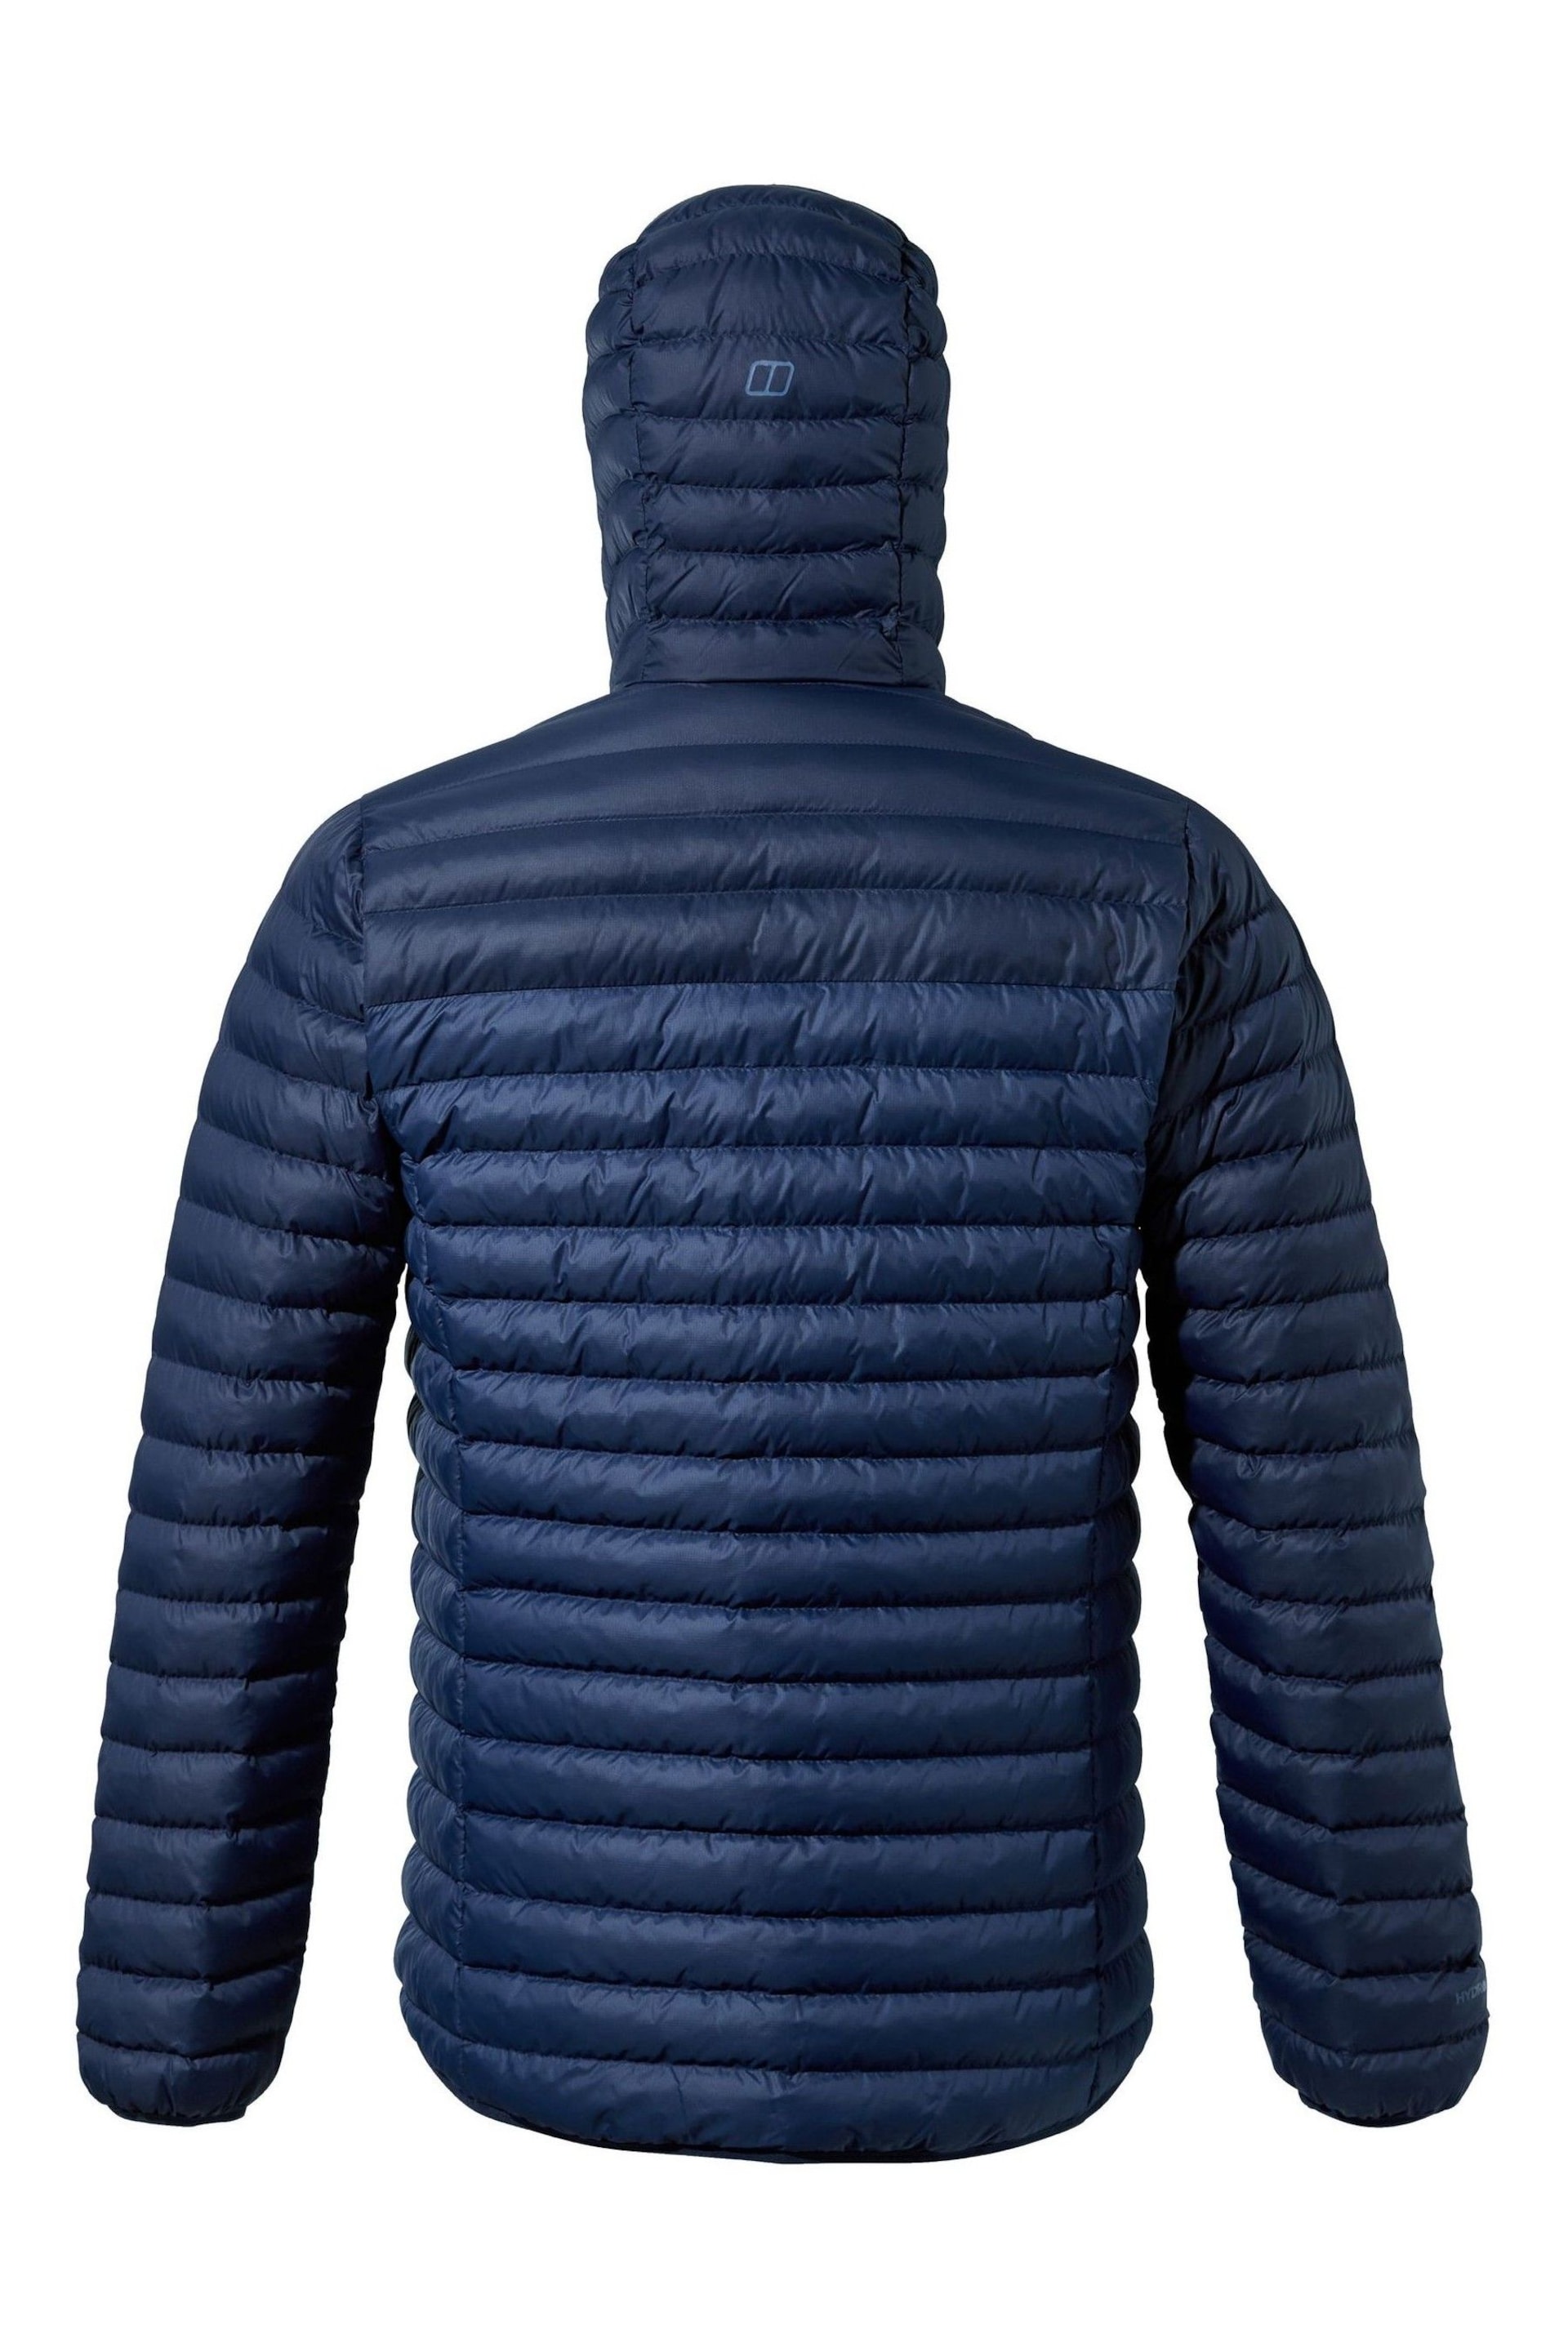 Berghaus Vaskye Padded Jacket - Image 9 of 14